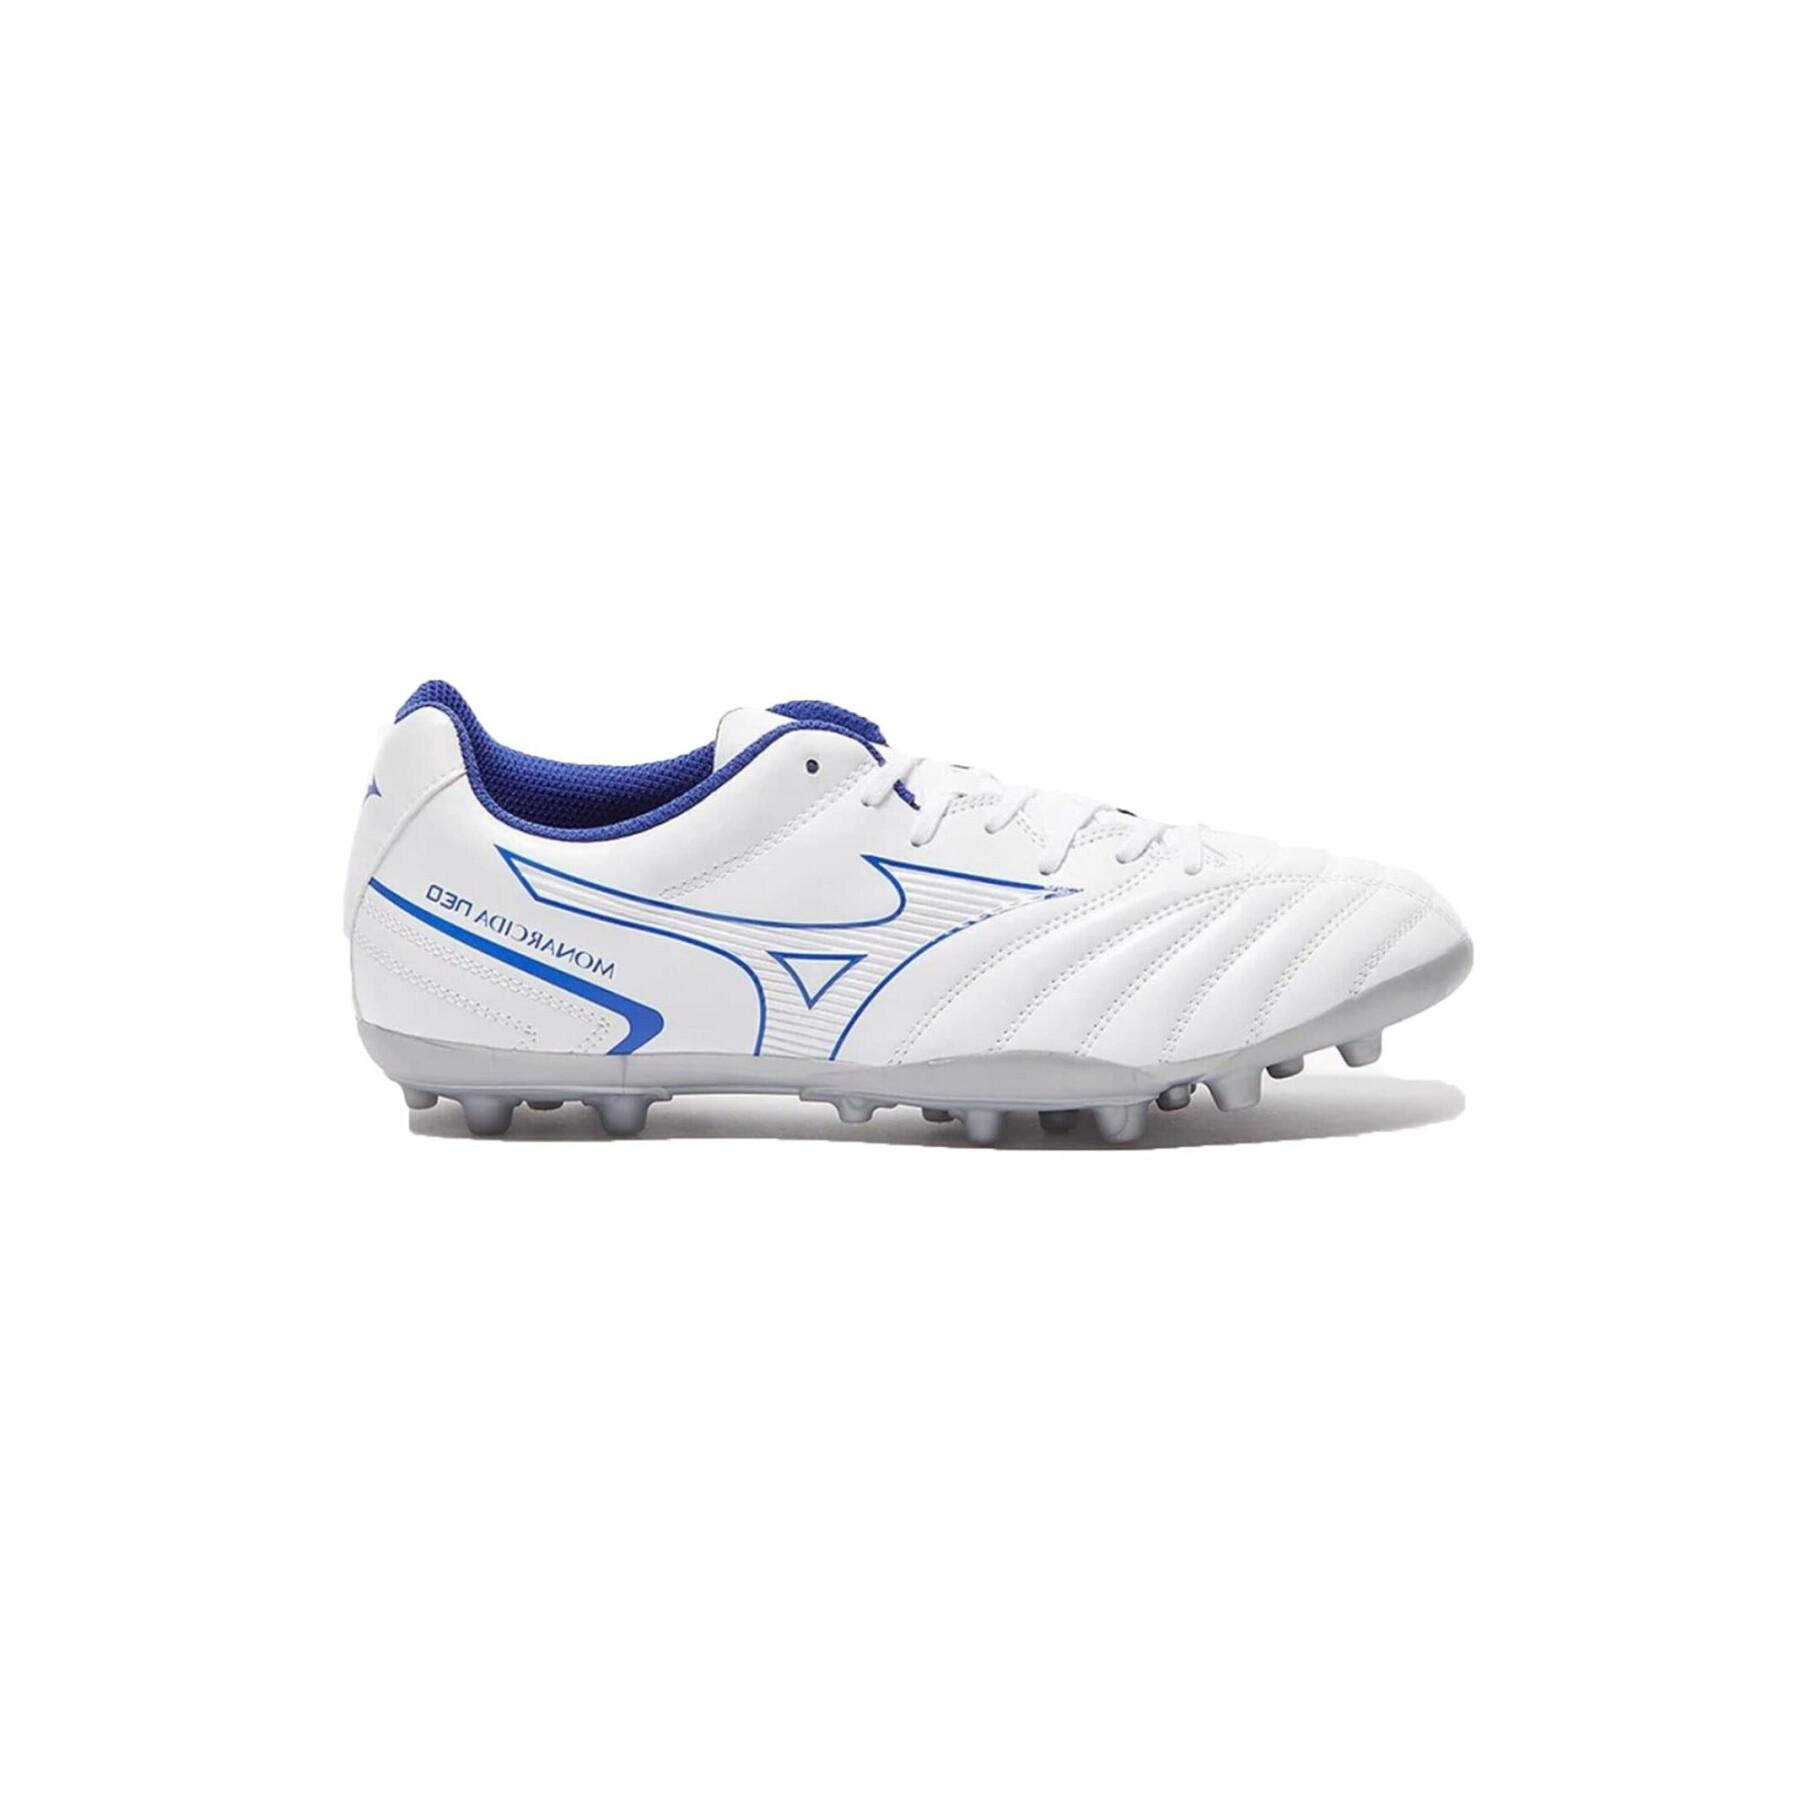 Sapatos de futebol Mizuno Monarcida Neo Select AG